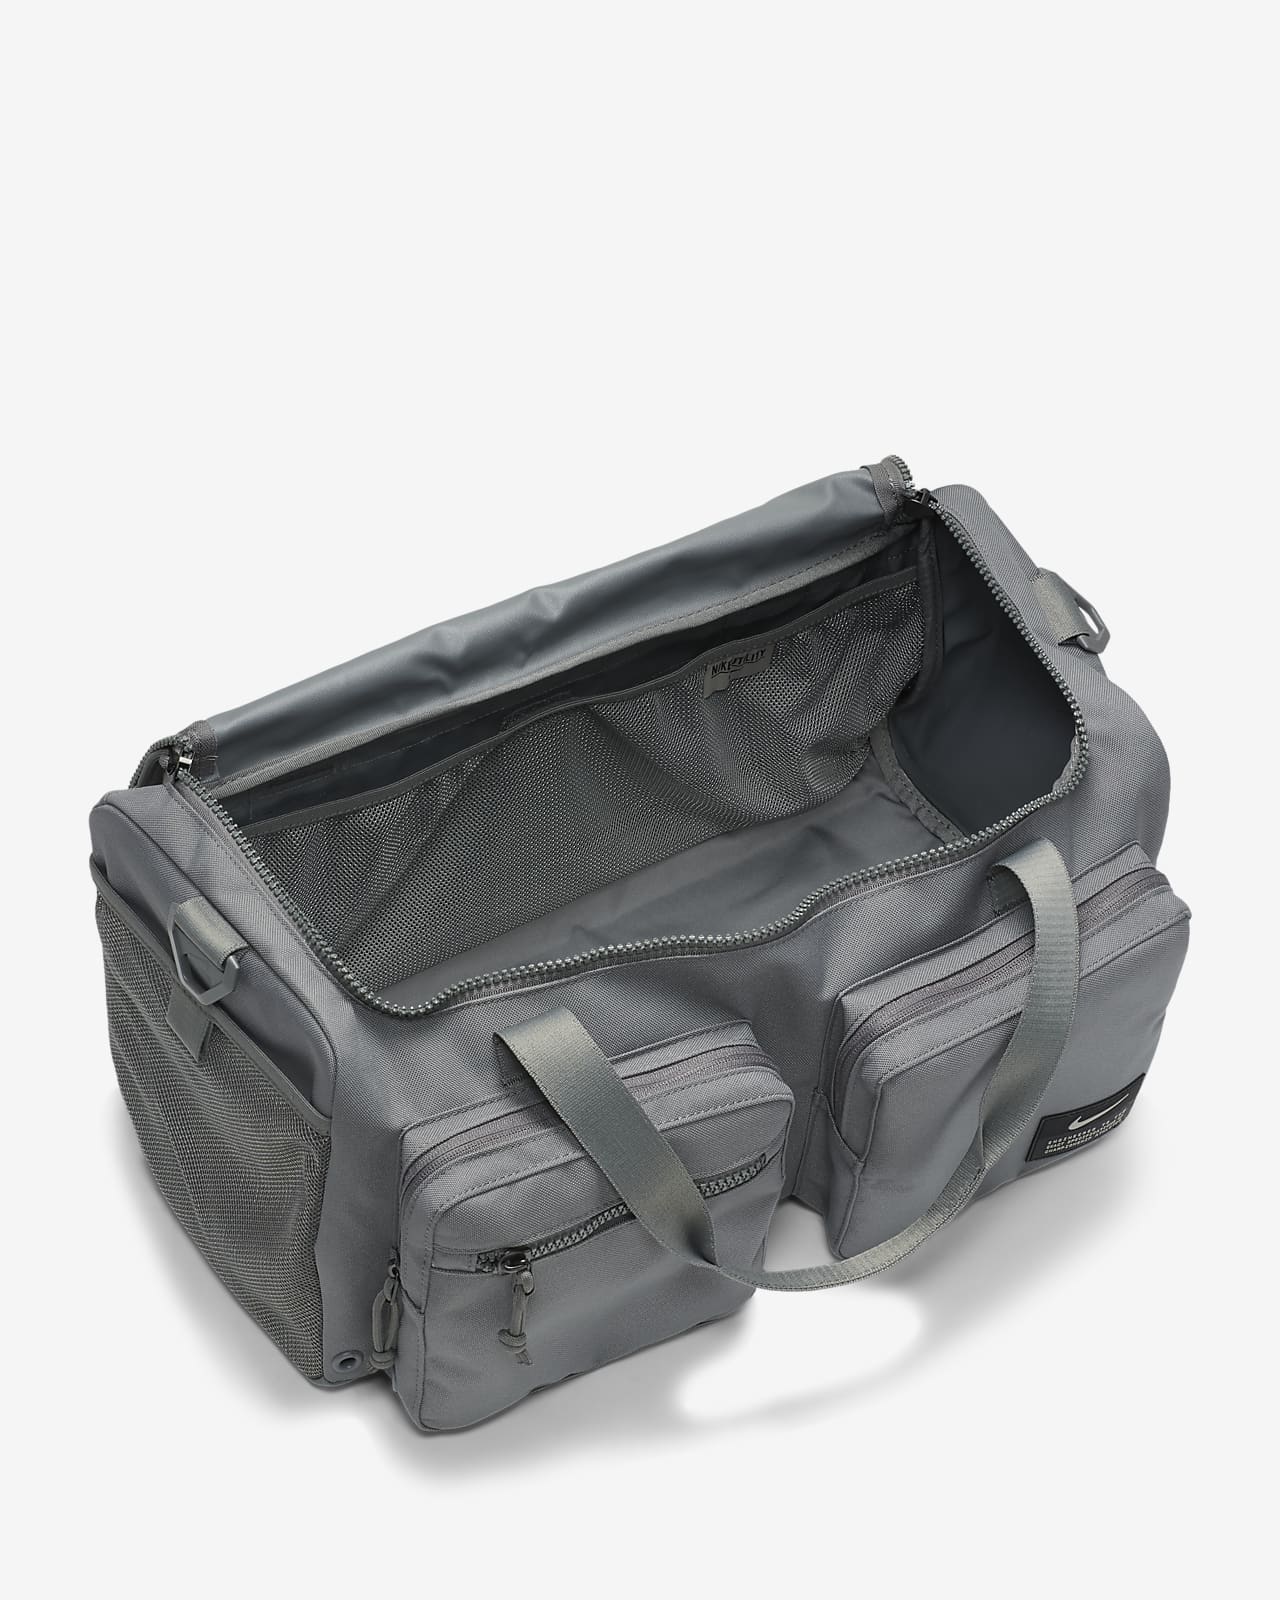 Nike Utility Power Training Duffel Bag (Small, 31L)